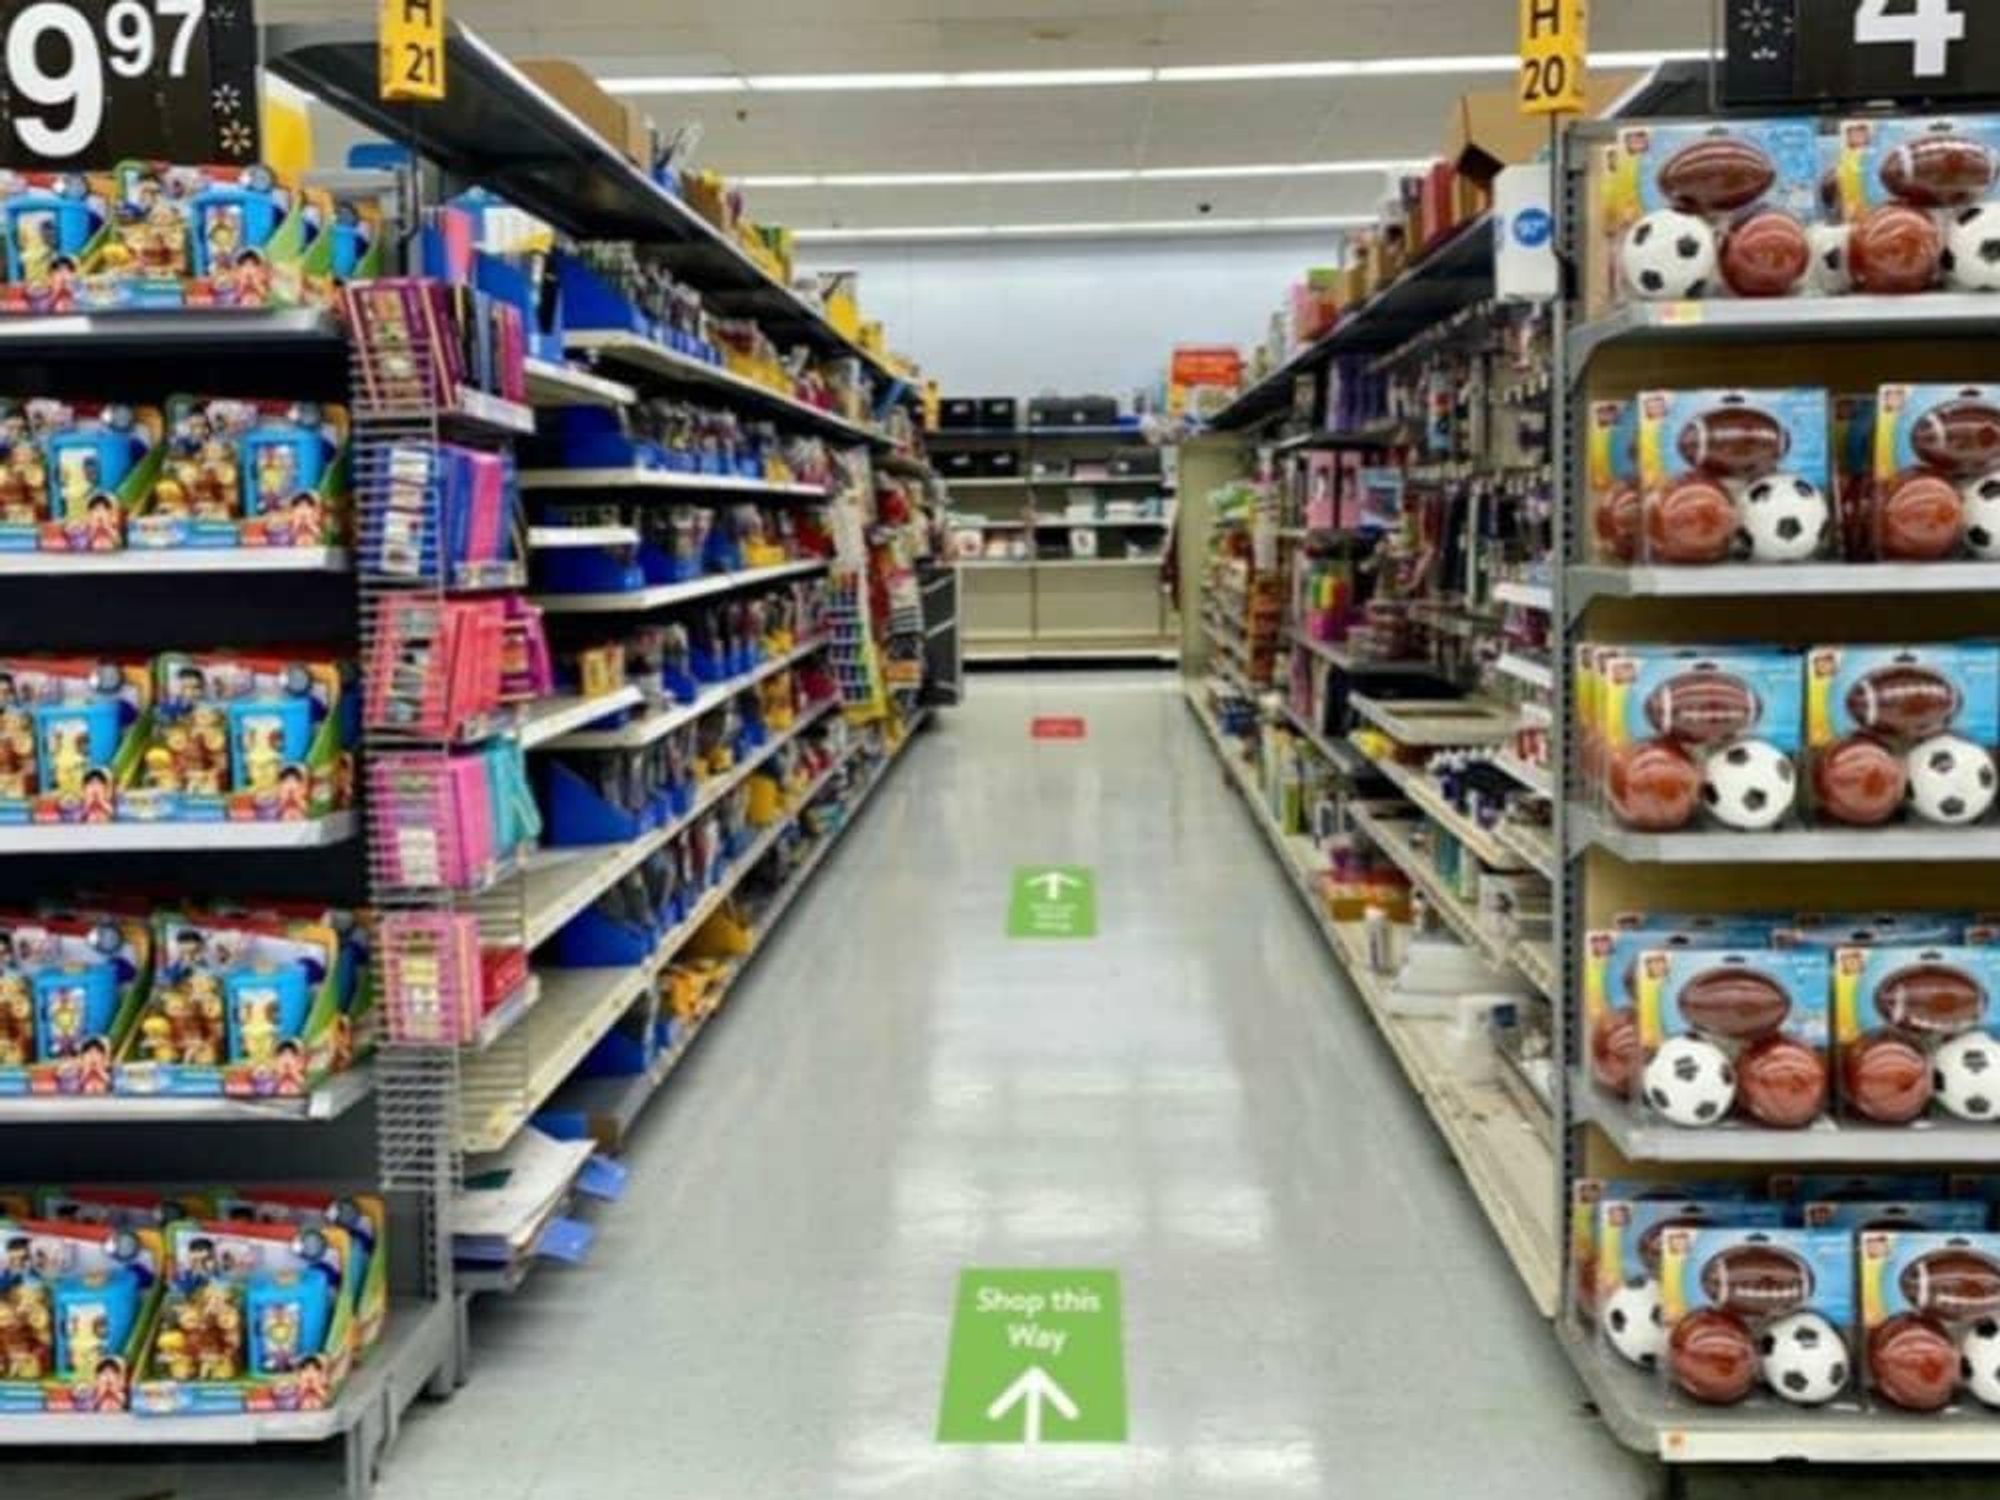 Walmart aisles